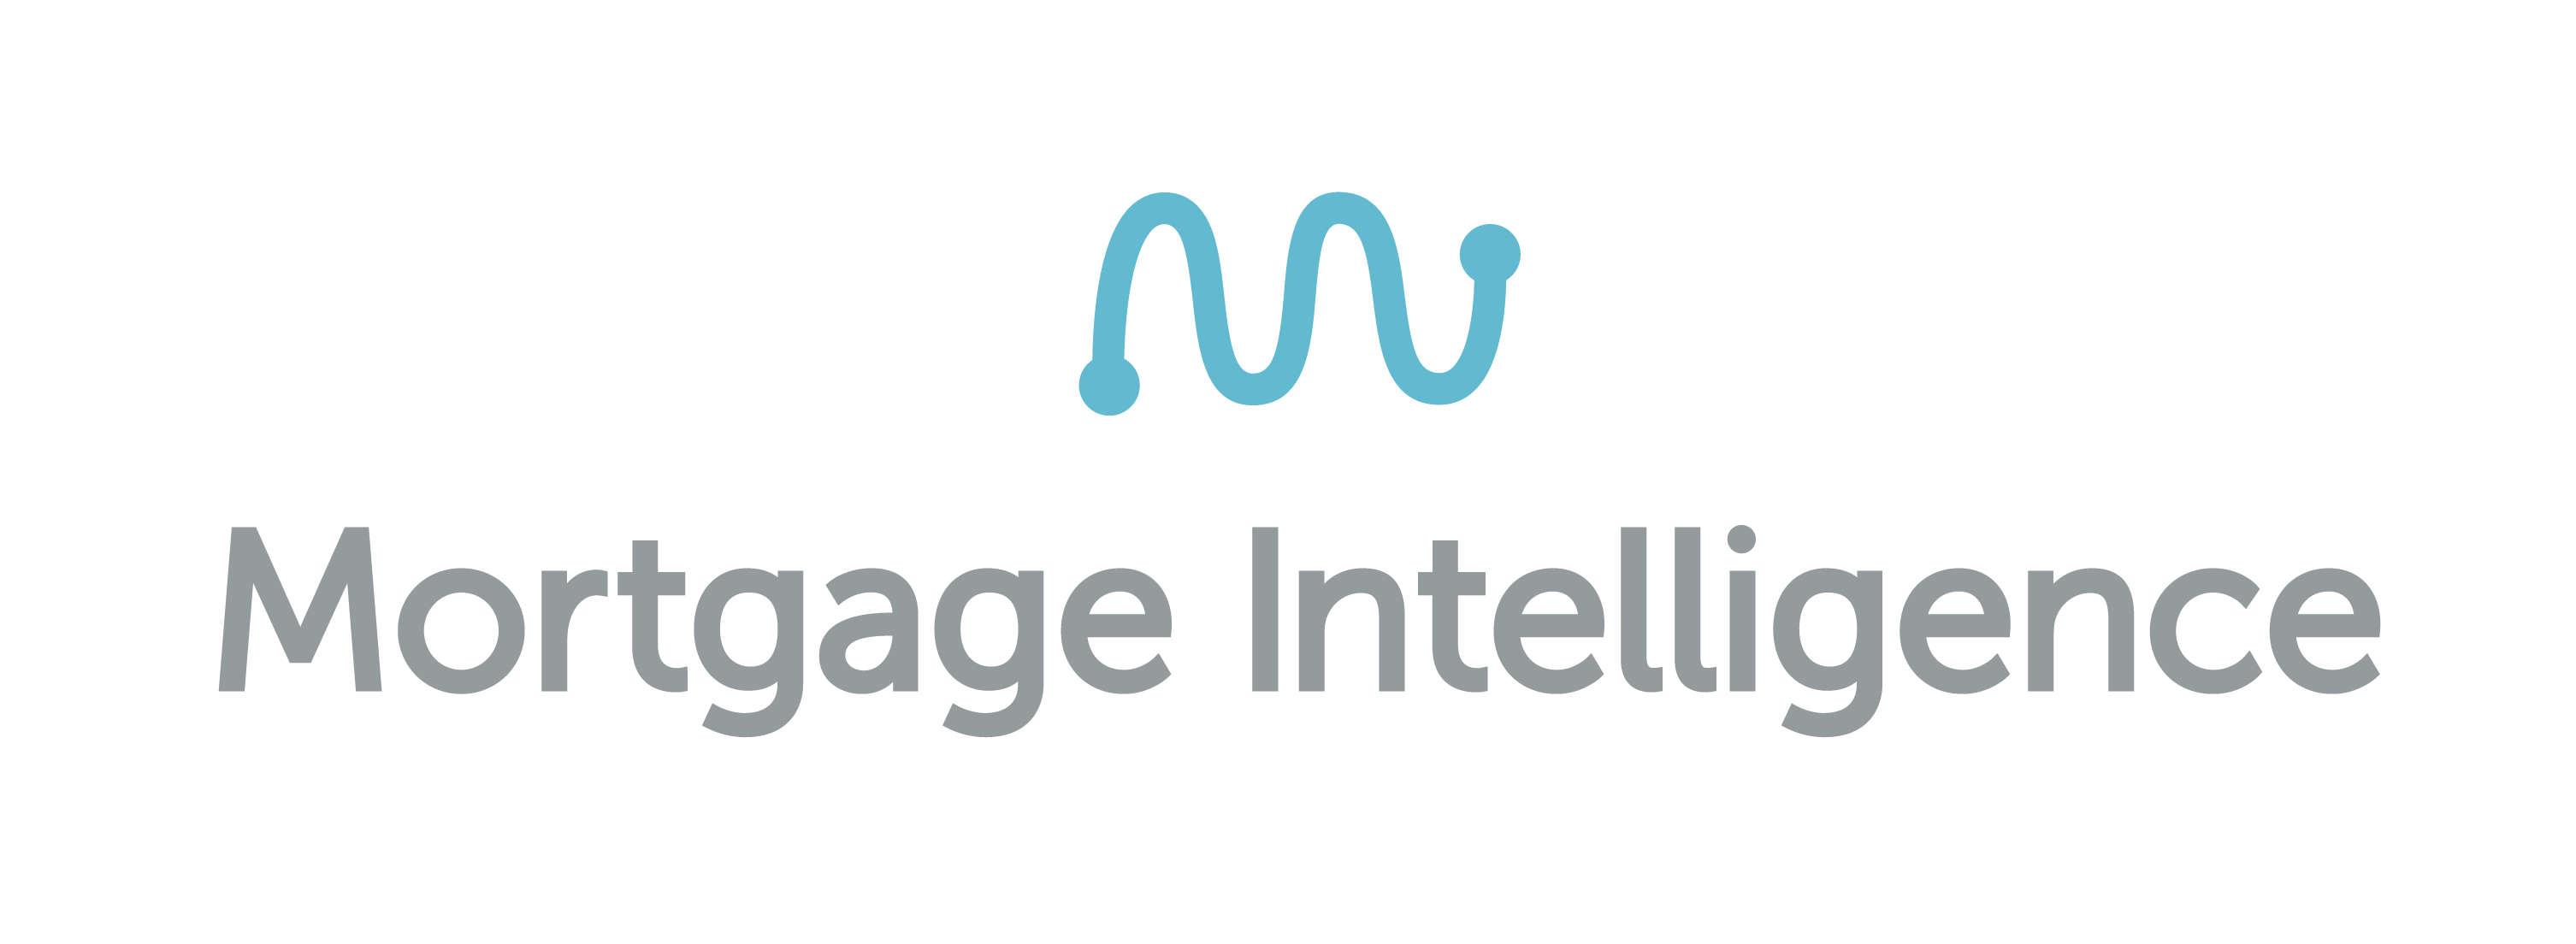 mortgage intelligence logo